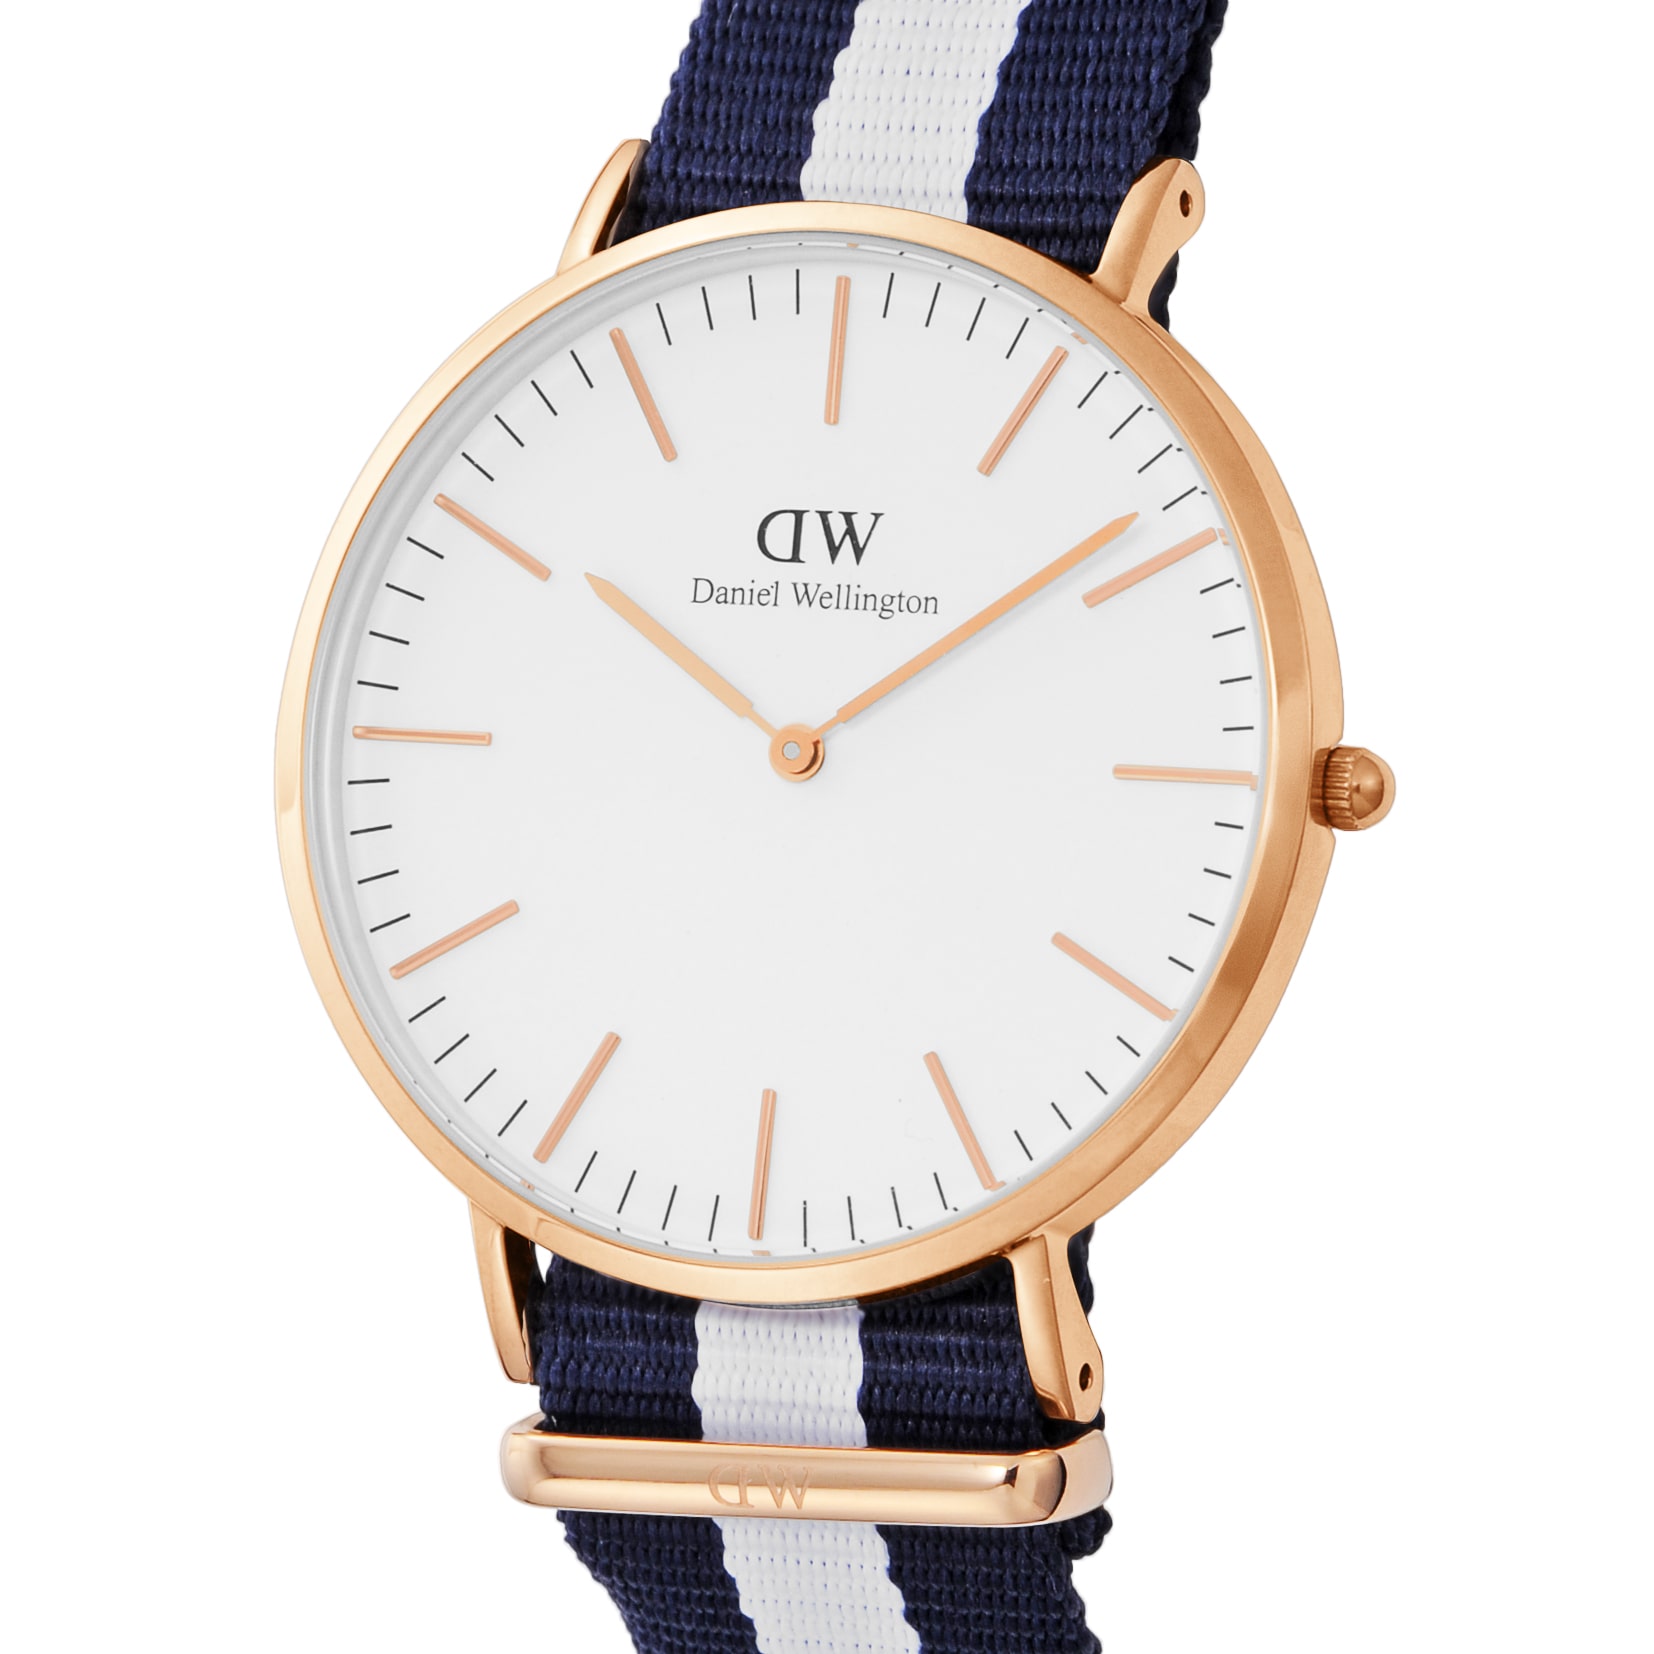 ダニエル ウェリントン DANIEL WELLINGTON 腕時計 メンズ Classic Glasgow DW00100004